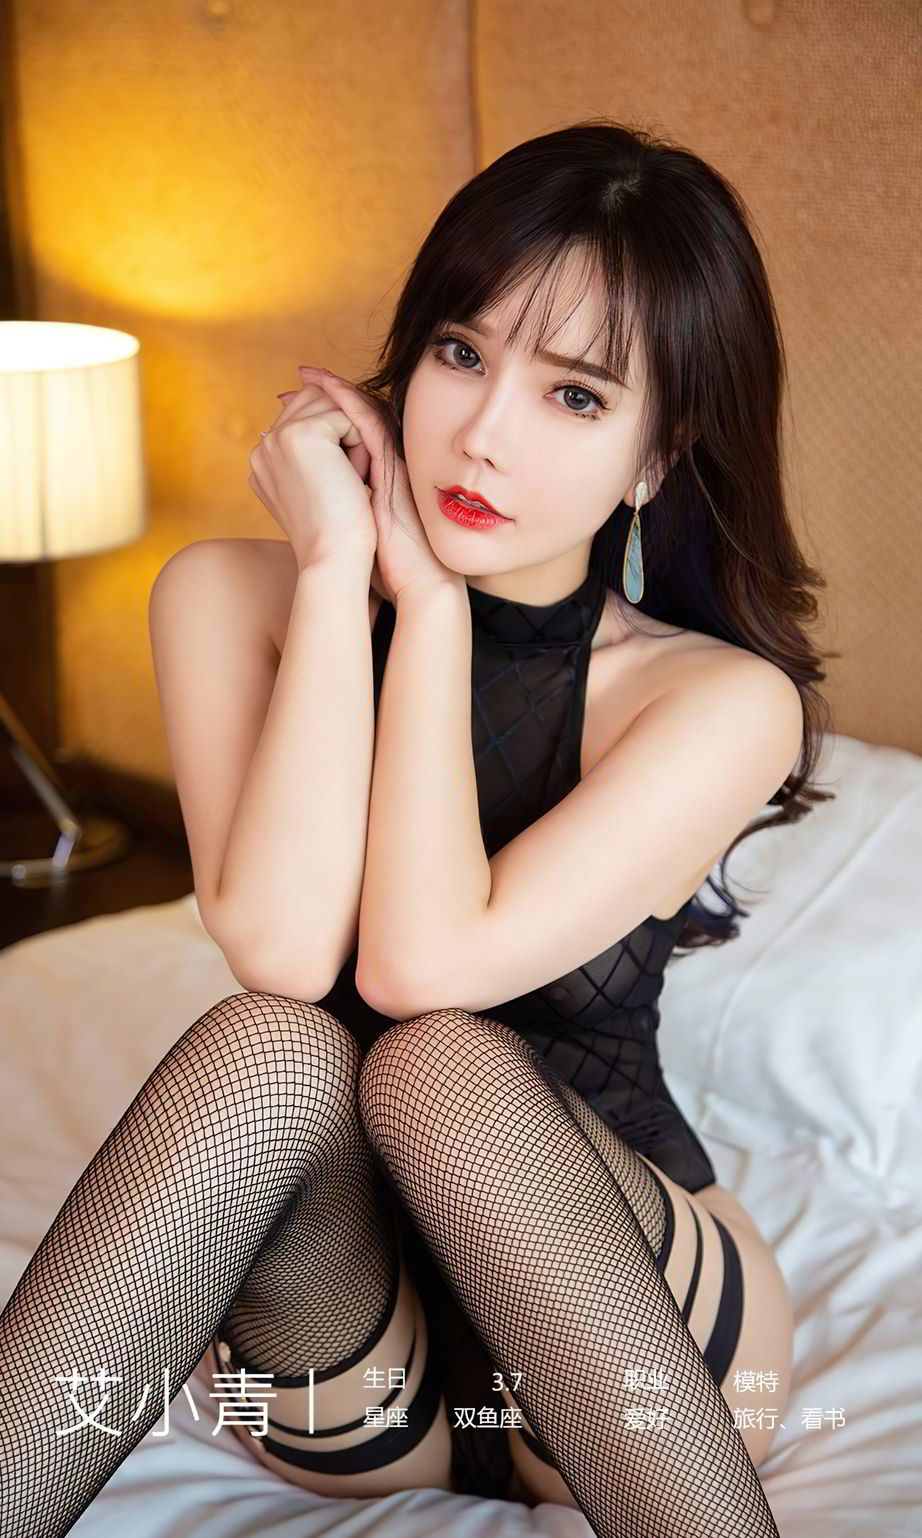 美女模特艾小青黑丝网袜性感紧身衣翘臀系列写真